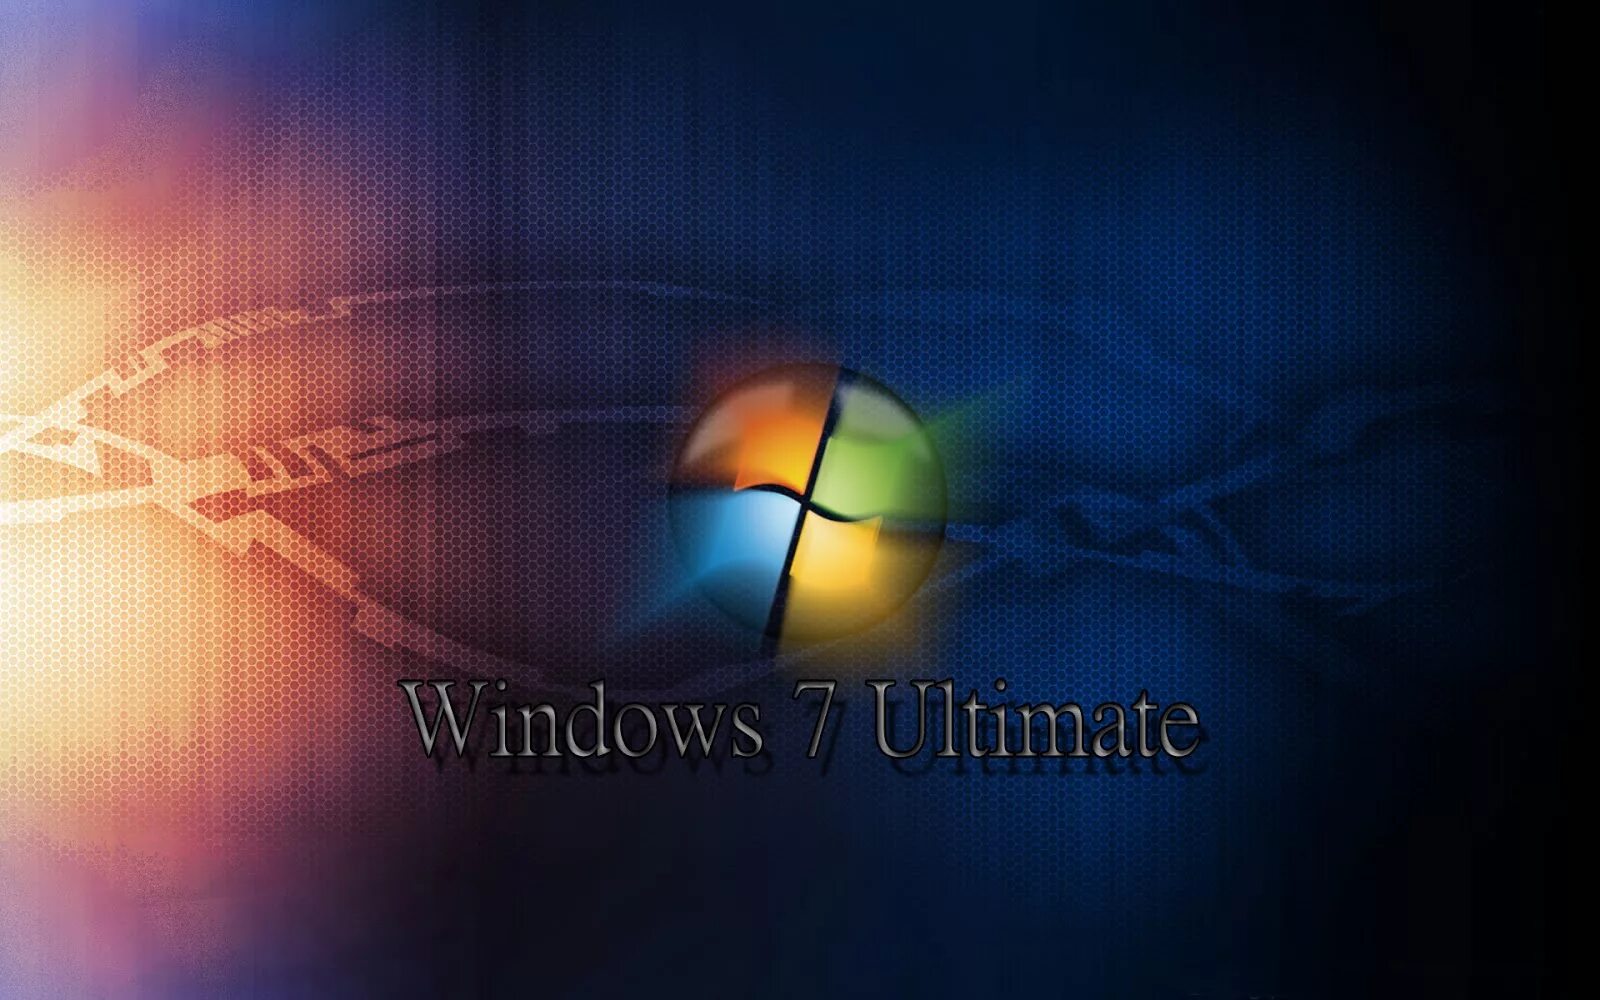 Виндовс 7 зверь. Виндовс 7. Windows 7 рабочий стол. Заставка виндовс. Заставка Windows 7.